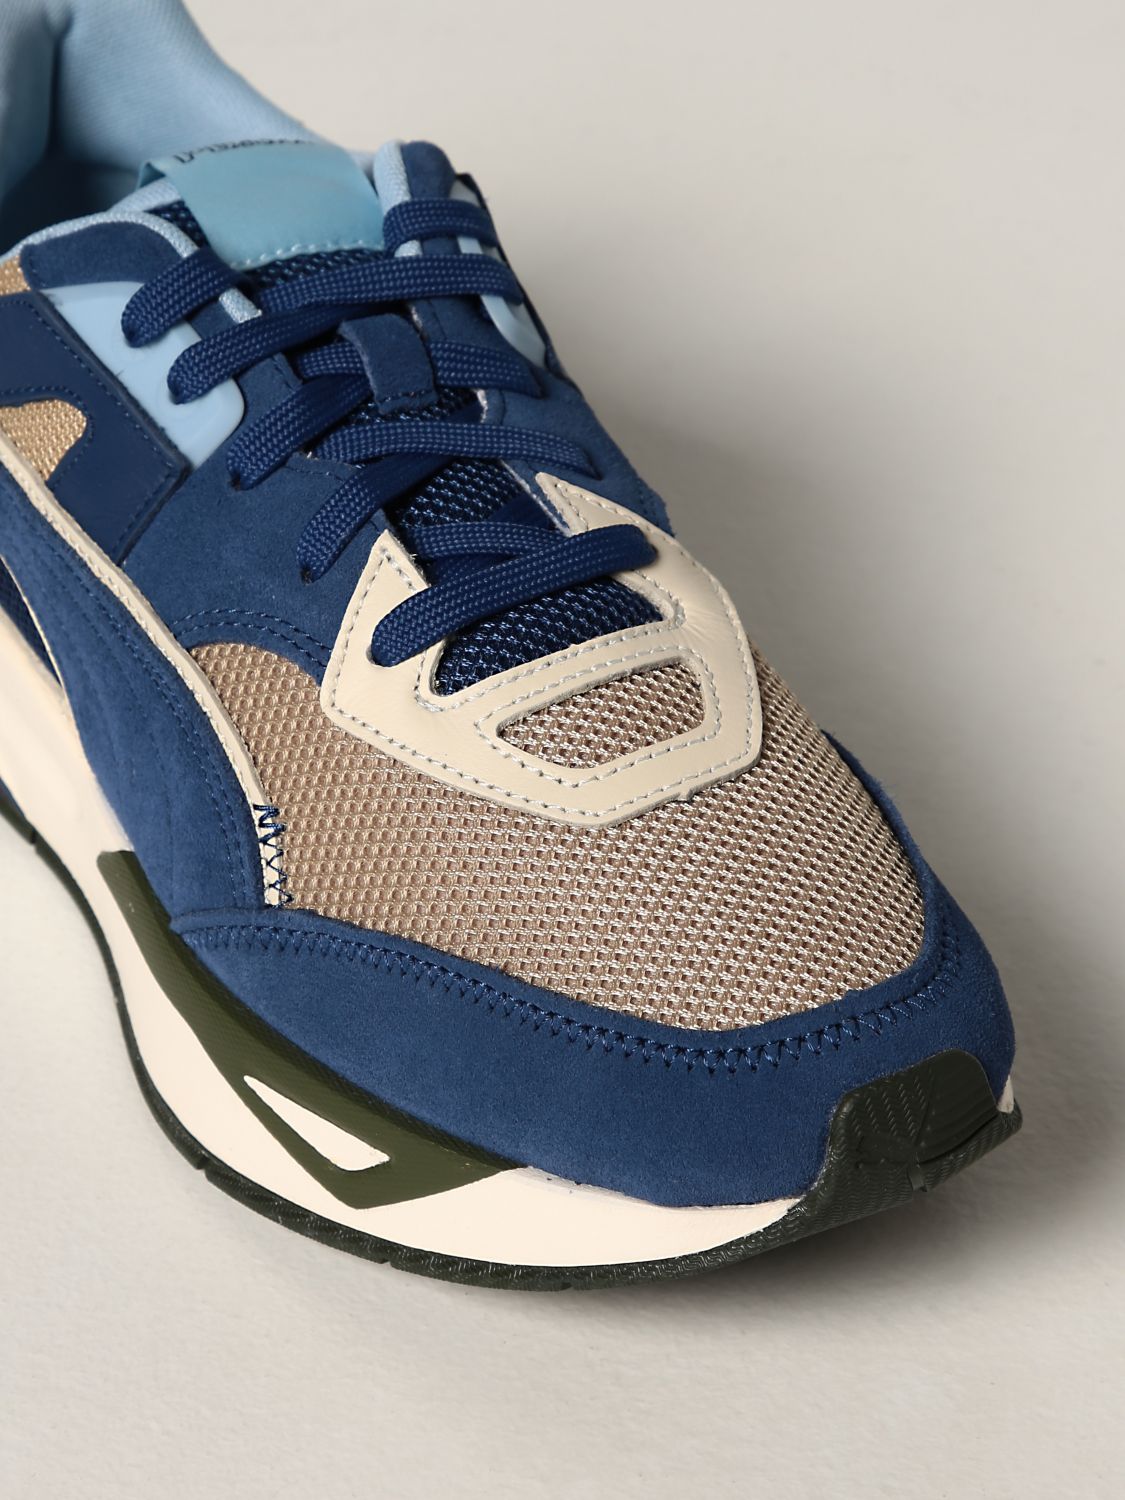 puma shoes for men blue color